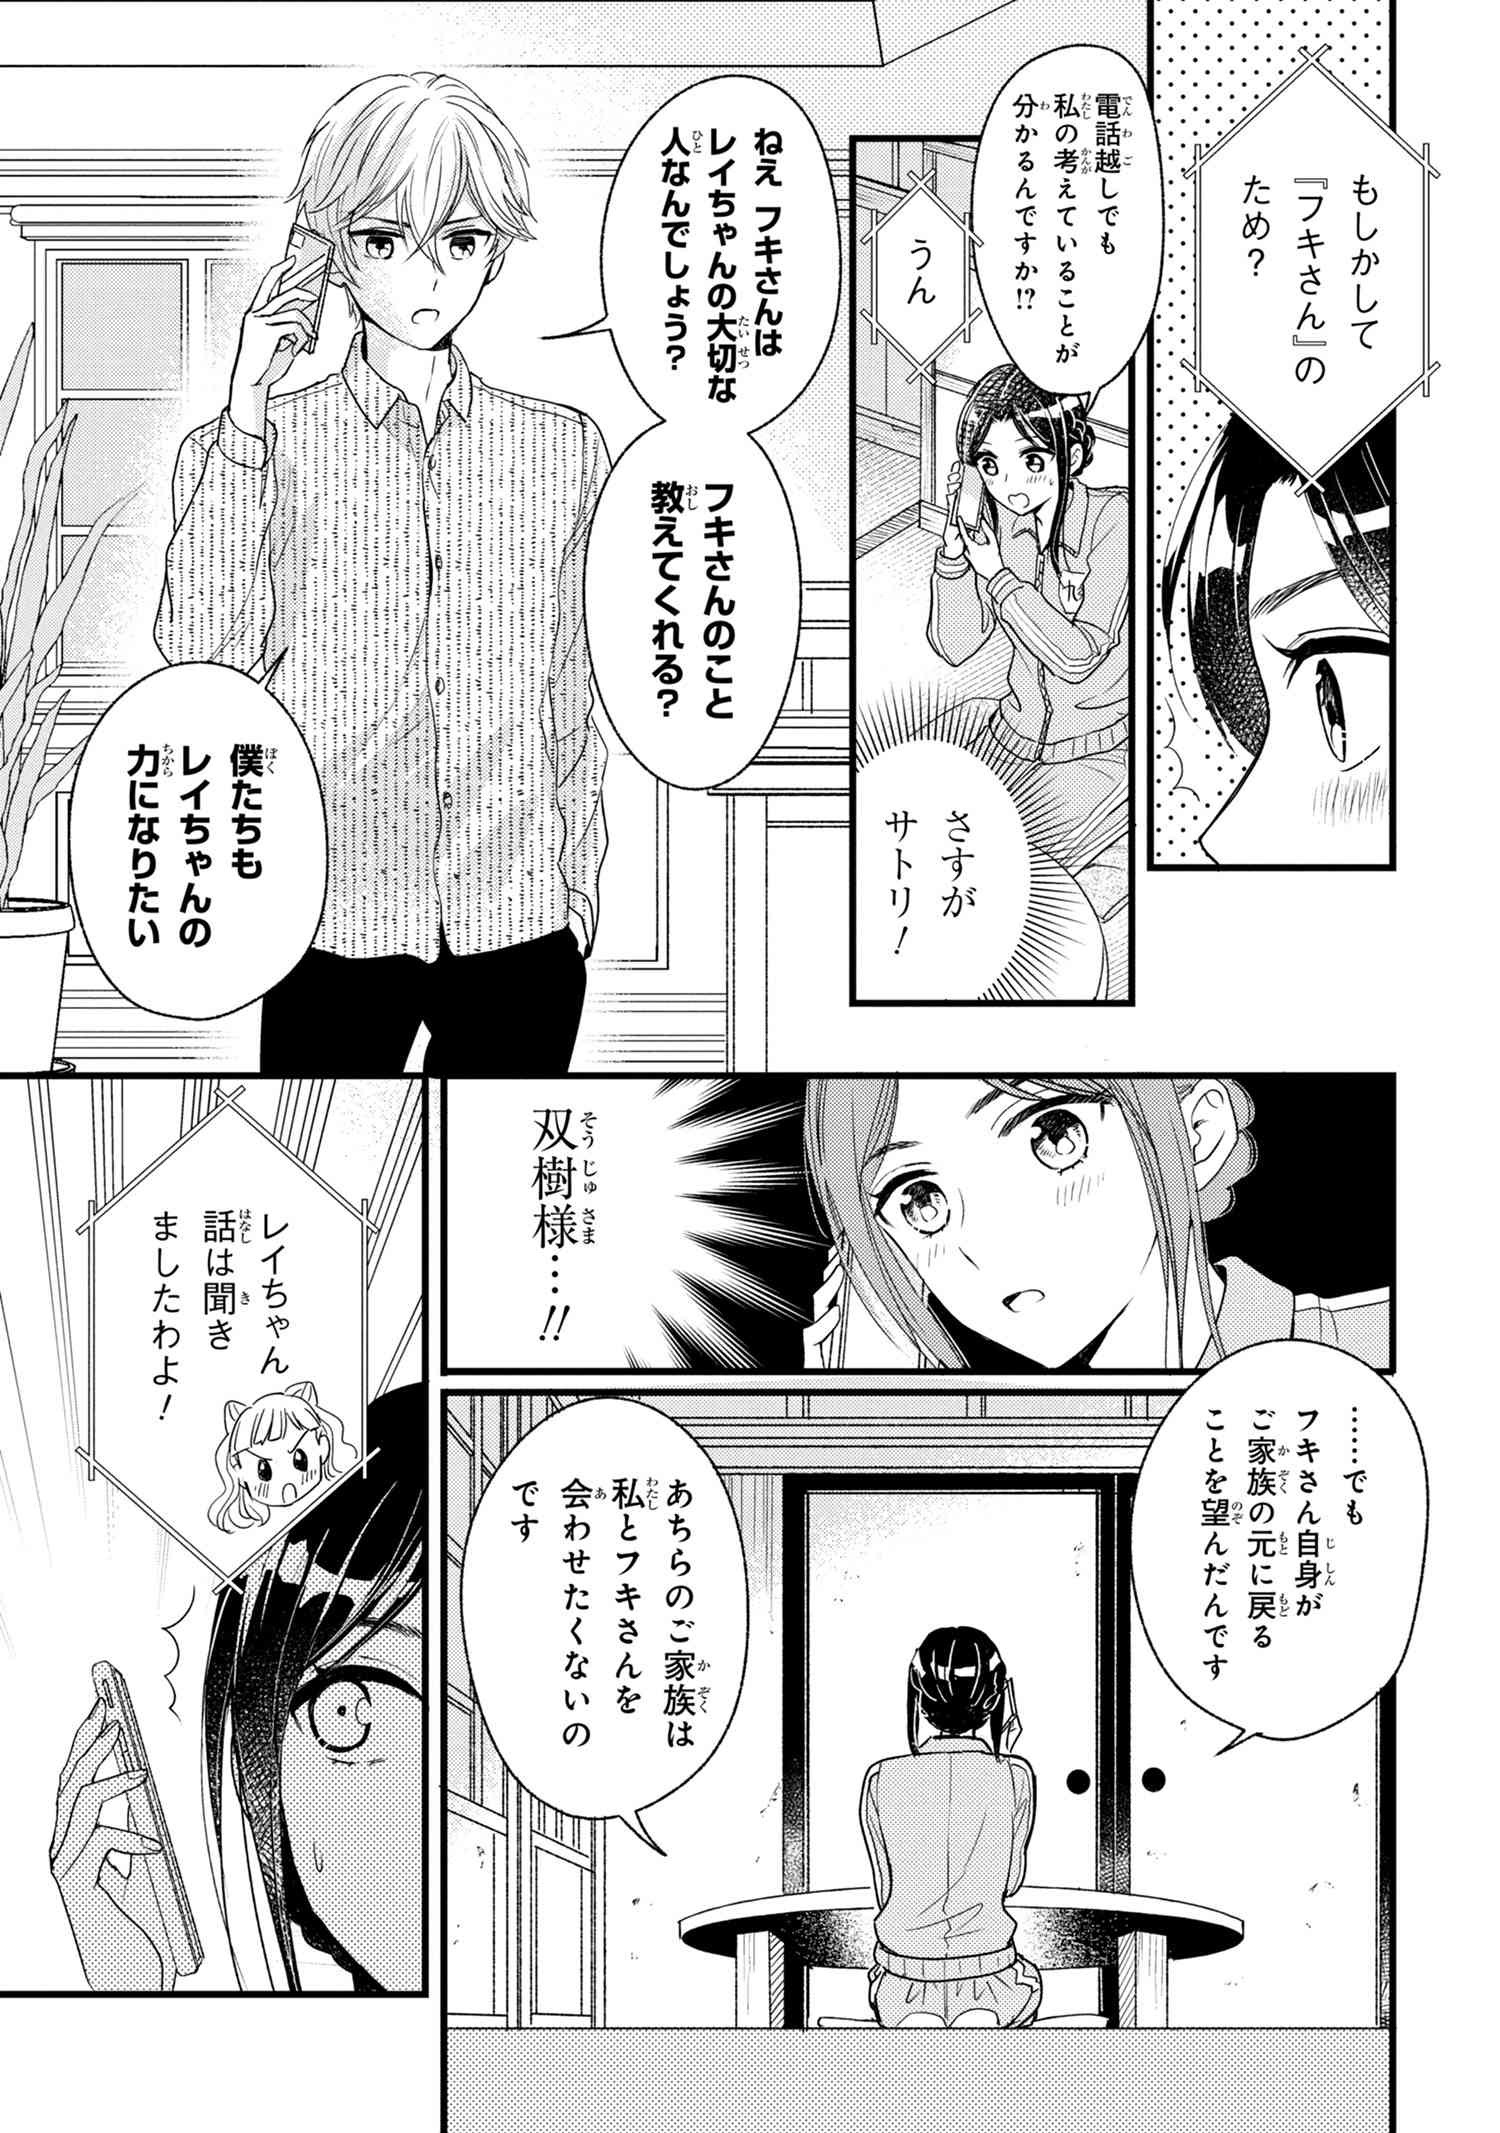 Reiko no Fuugi Akuyaku Reijou to Yobarete imasu ga, tada no Binbou Musume desu - Chapter 6-2 - Page 5